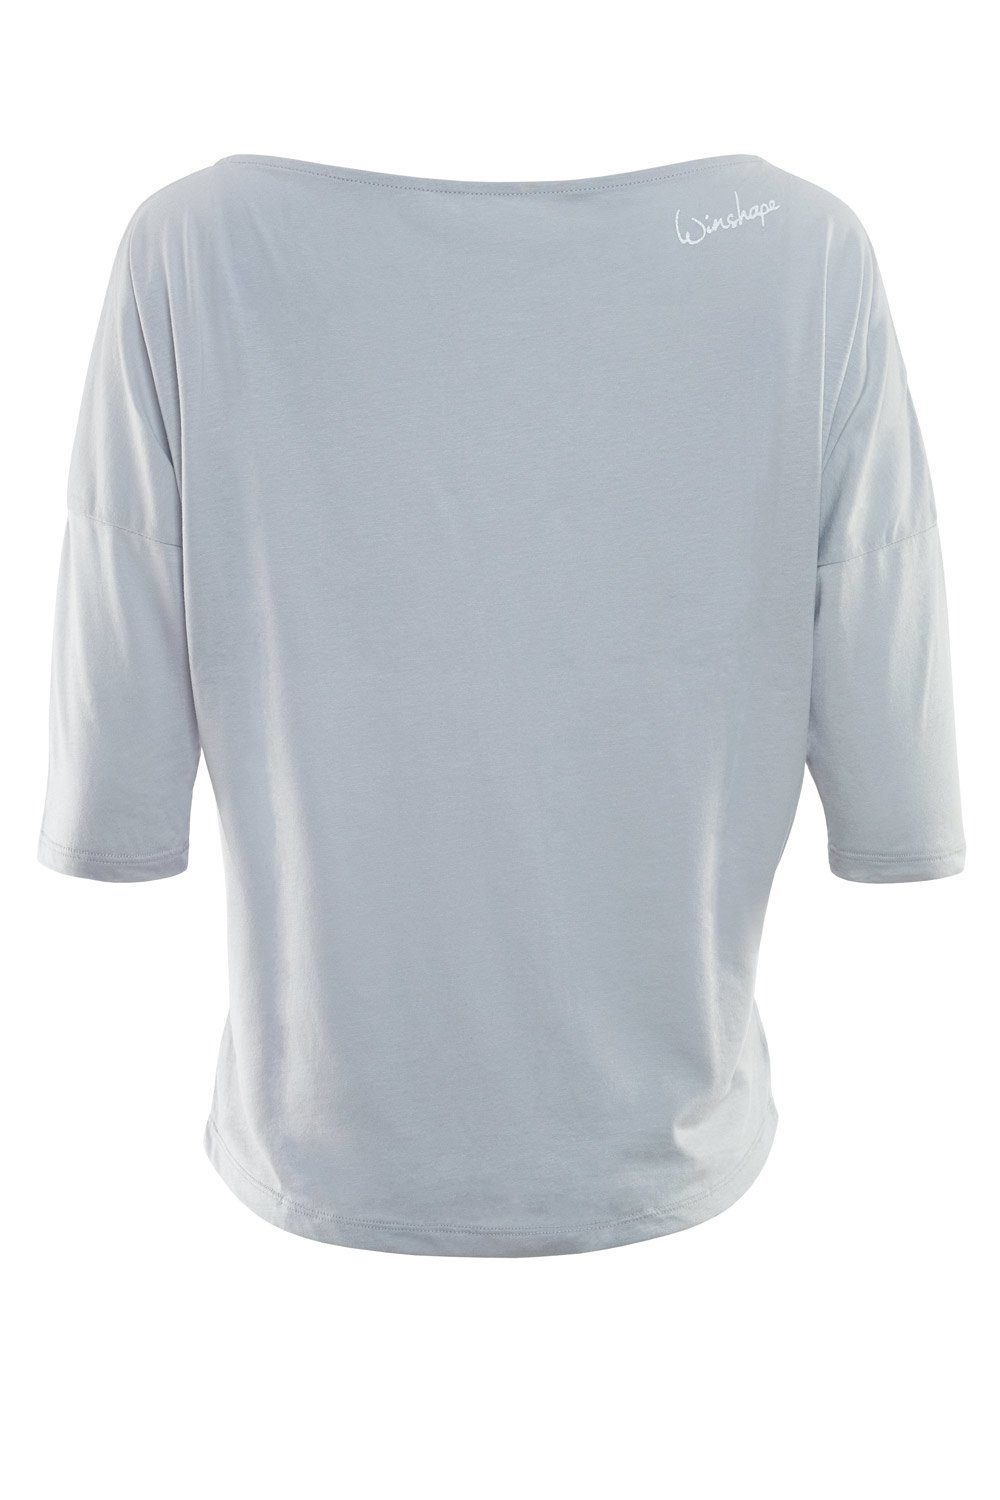 MCS001 mit weißem - grey leicht cool Glitzer-Aufdruck weiß 3/4-Arm-Shirt ultra glitzer Winshape